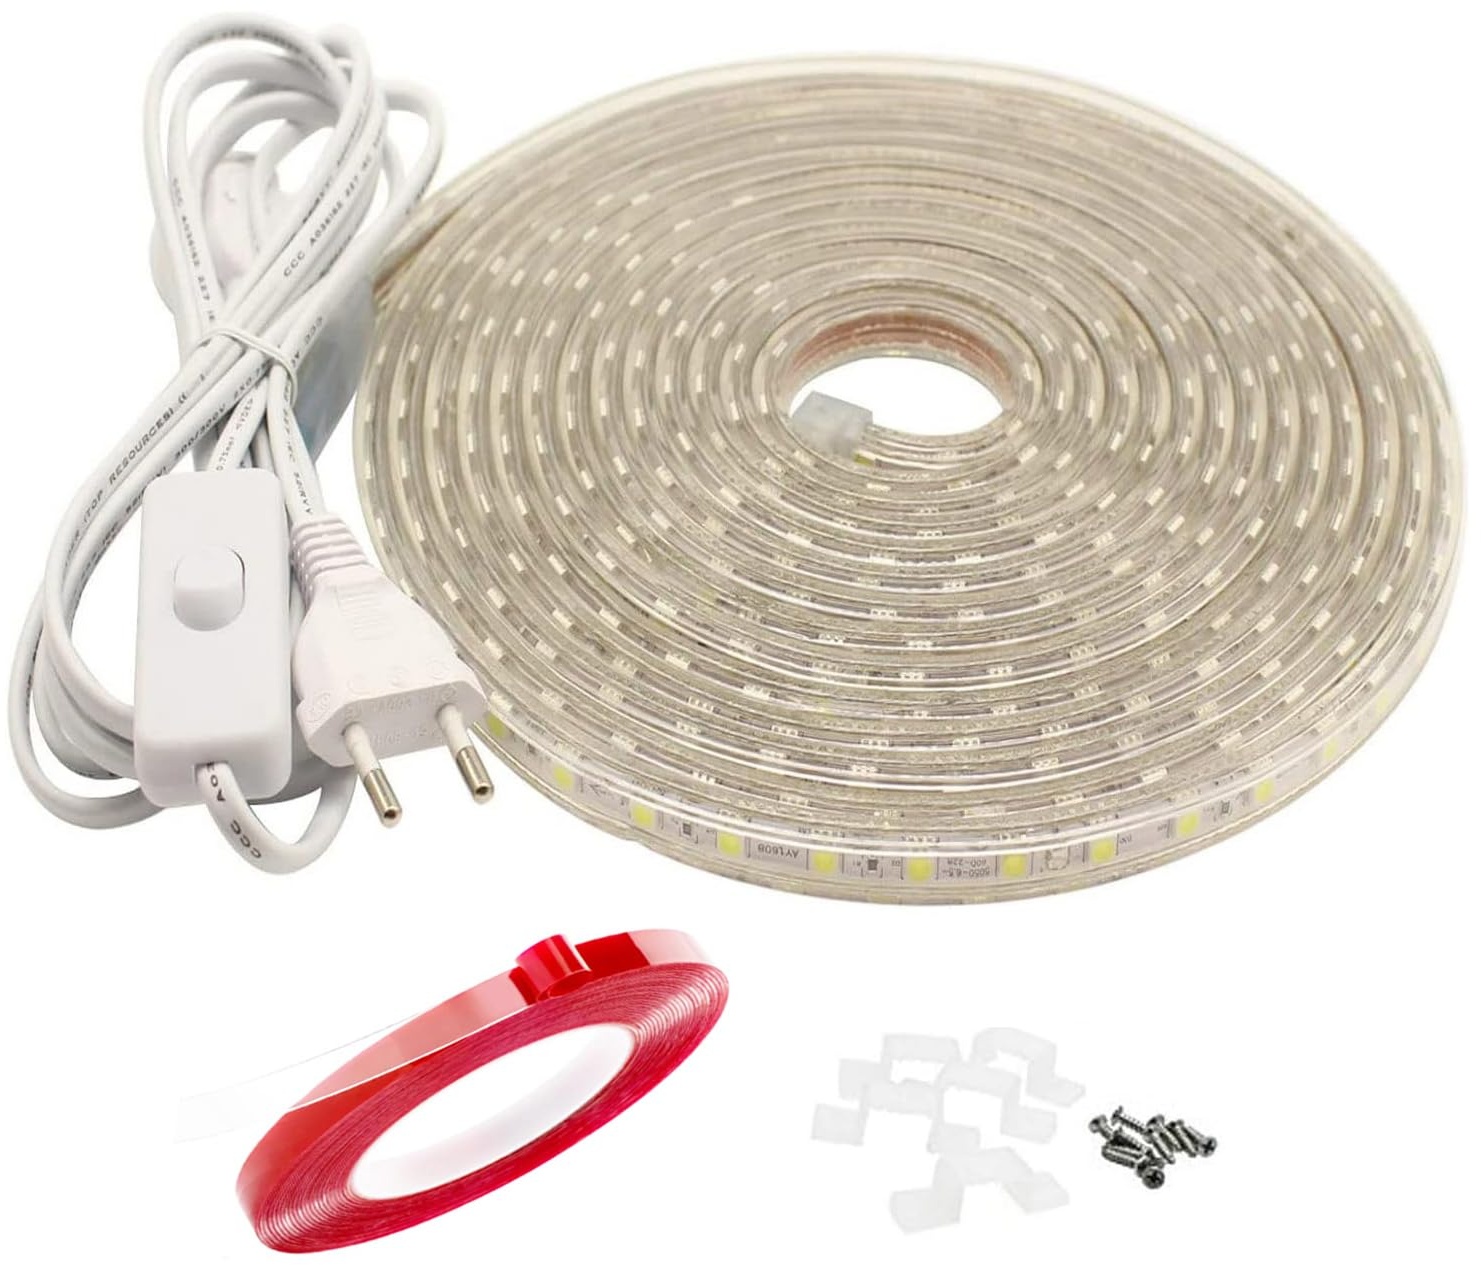 Q.Laomi LED Streifen mit Schalter, IP65 Wasserdicht Led Band, LED Lichtleiste Strip, 230V LED Lichtband 20M, Weiß